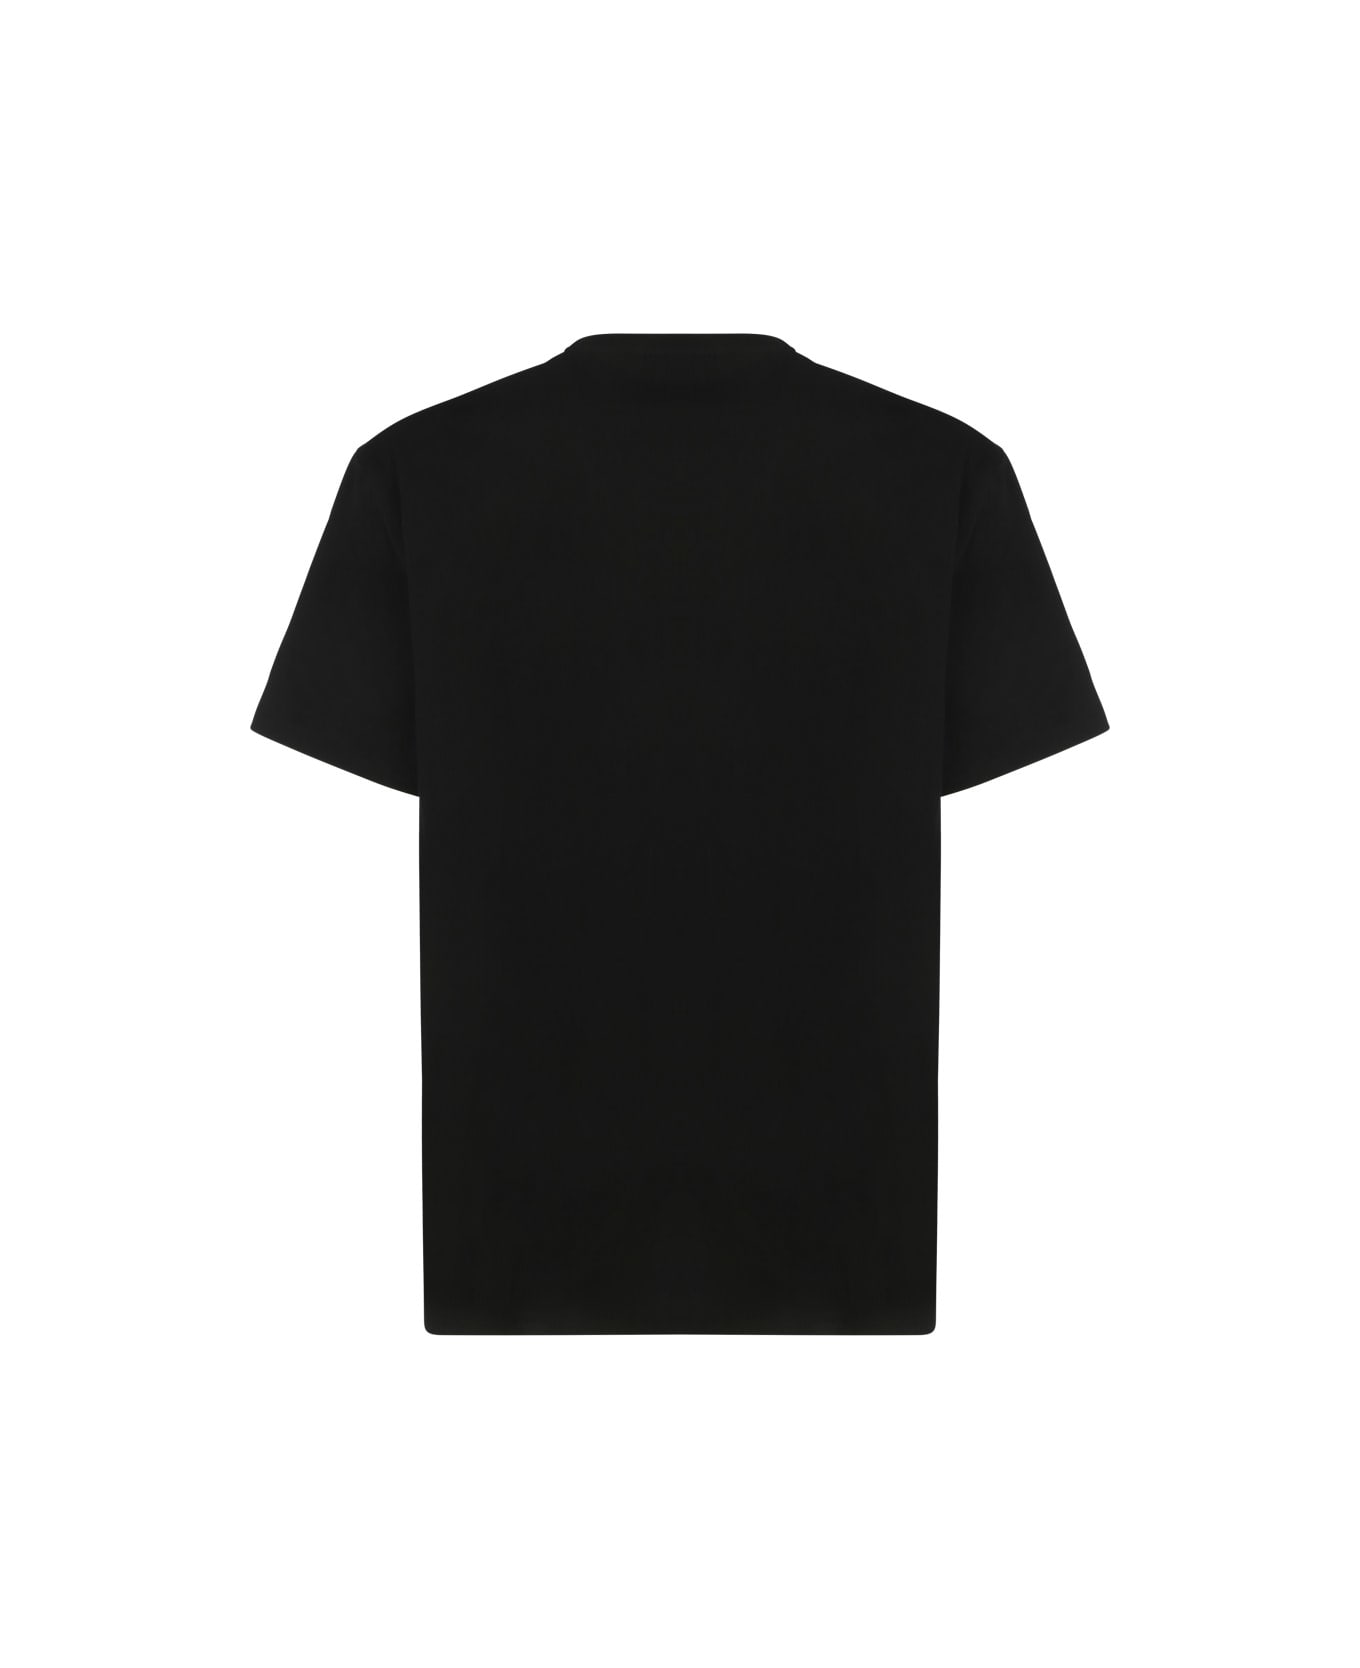 Alexander McQueen T-shirt - Black/mix